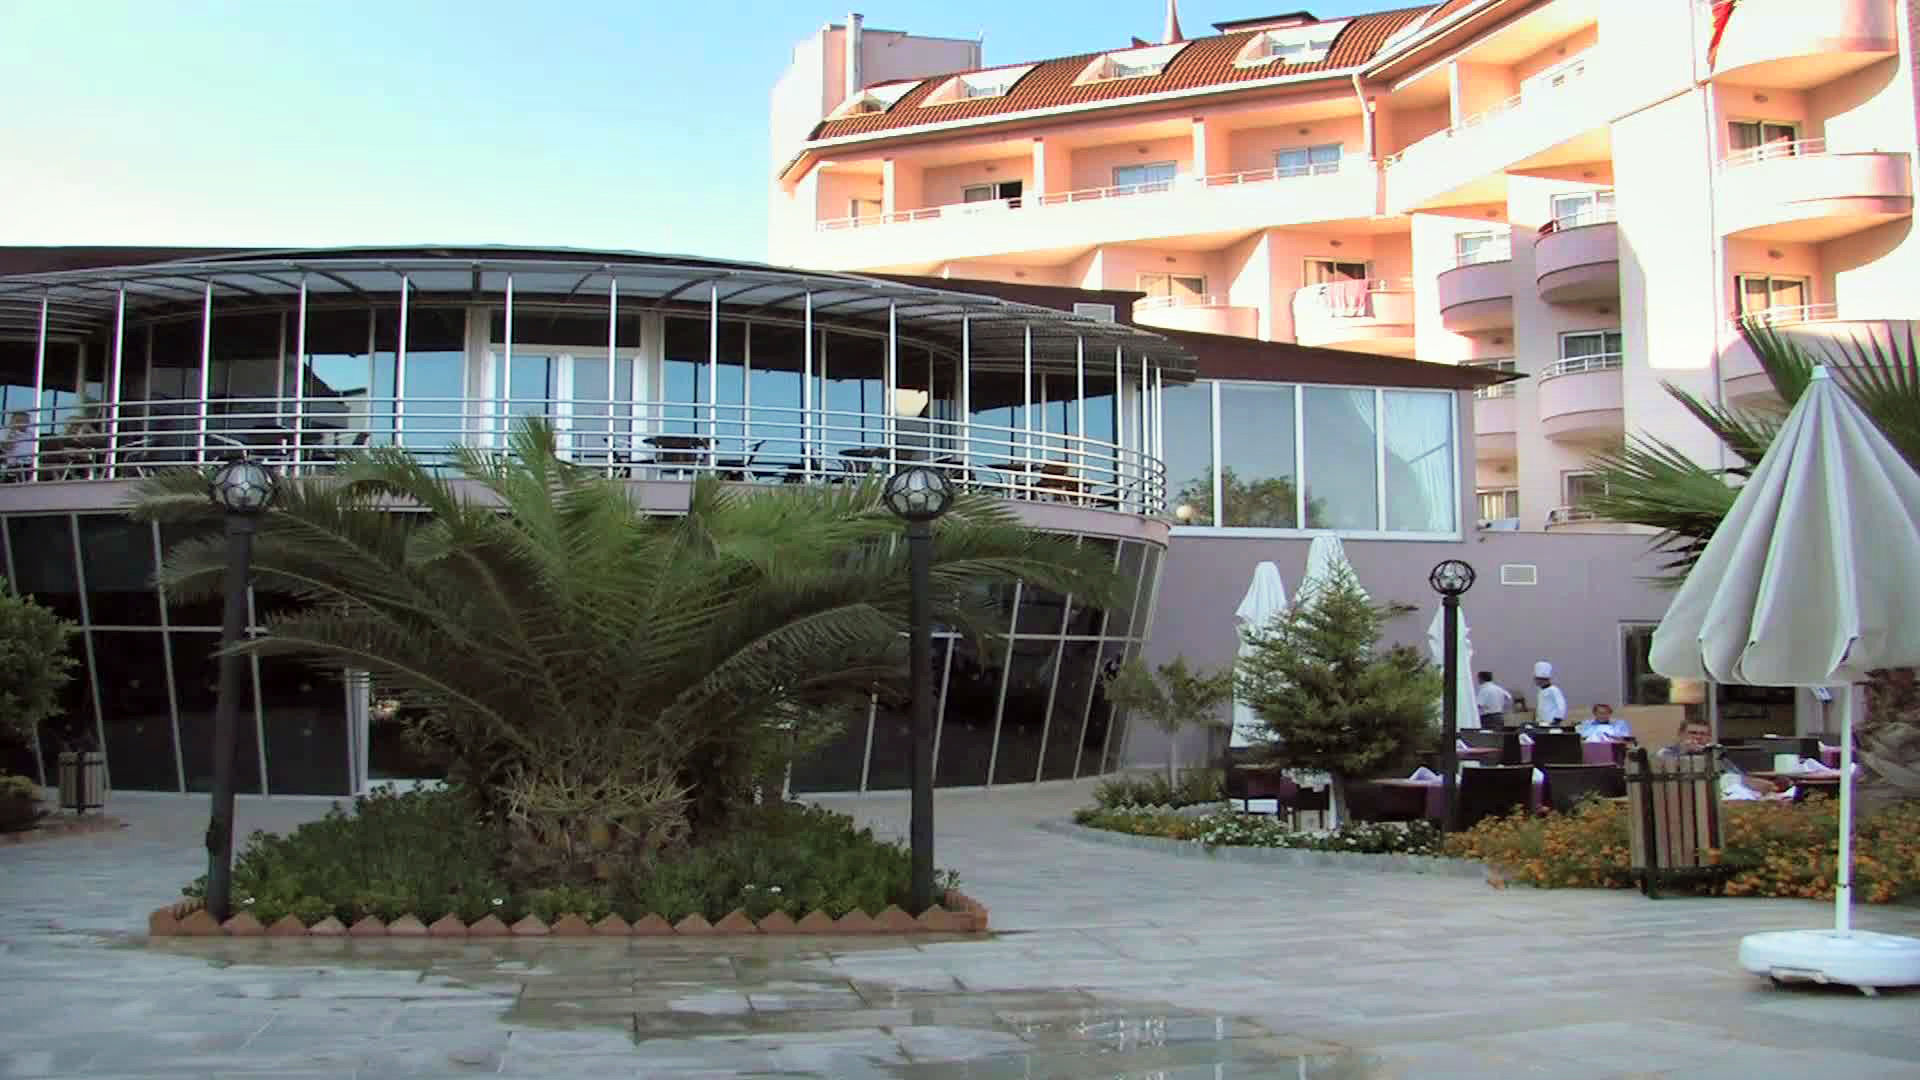 SIDE LILYUM HOTEL - SPA